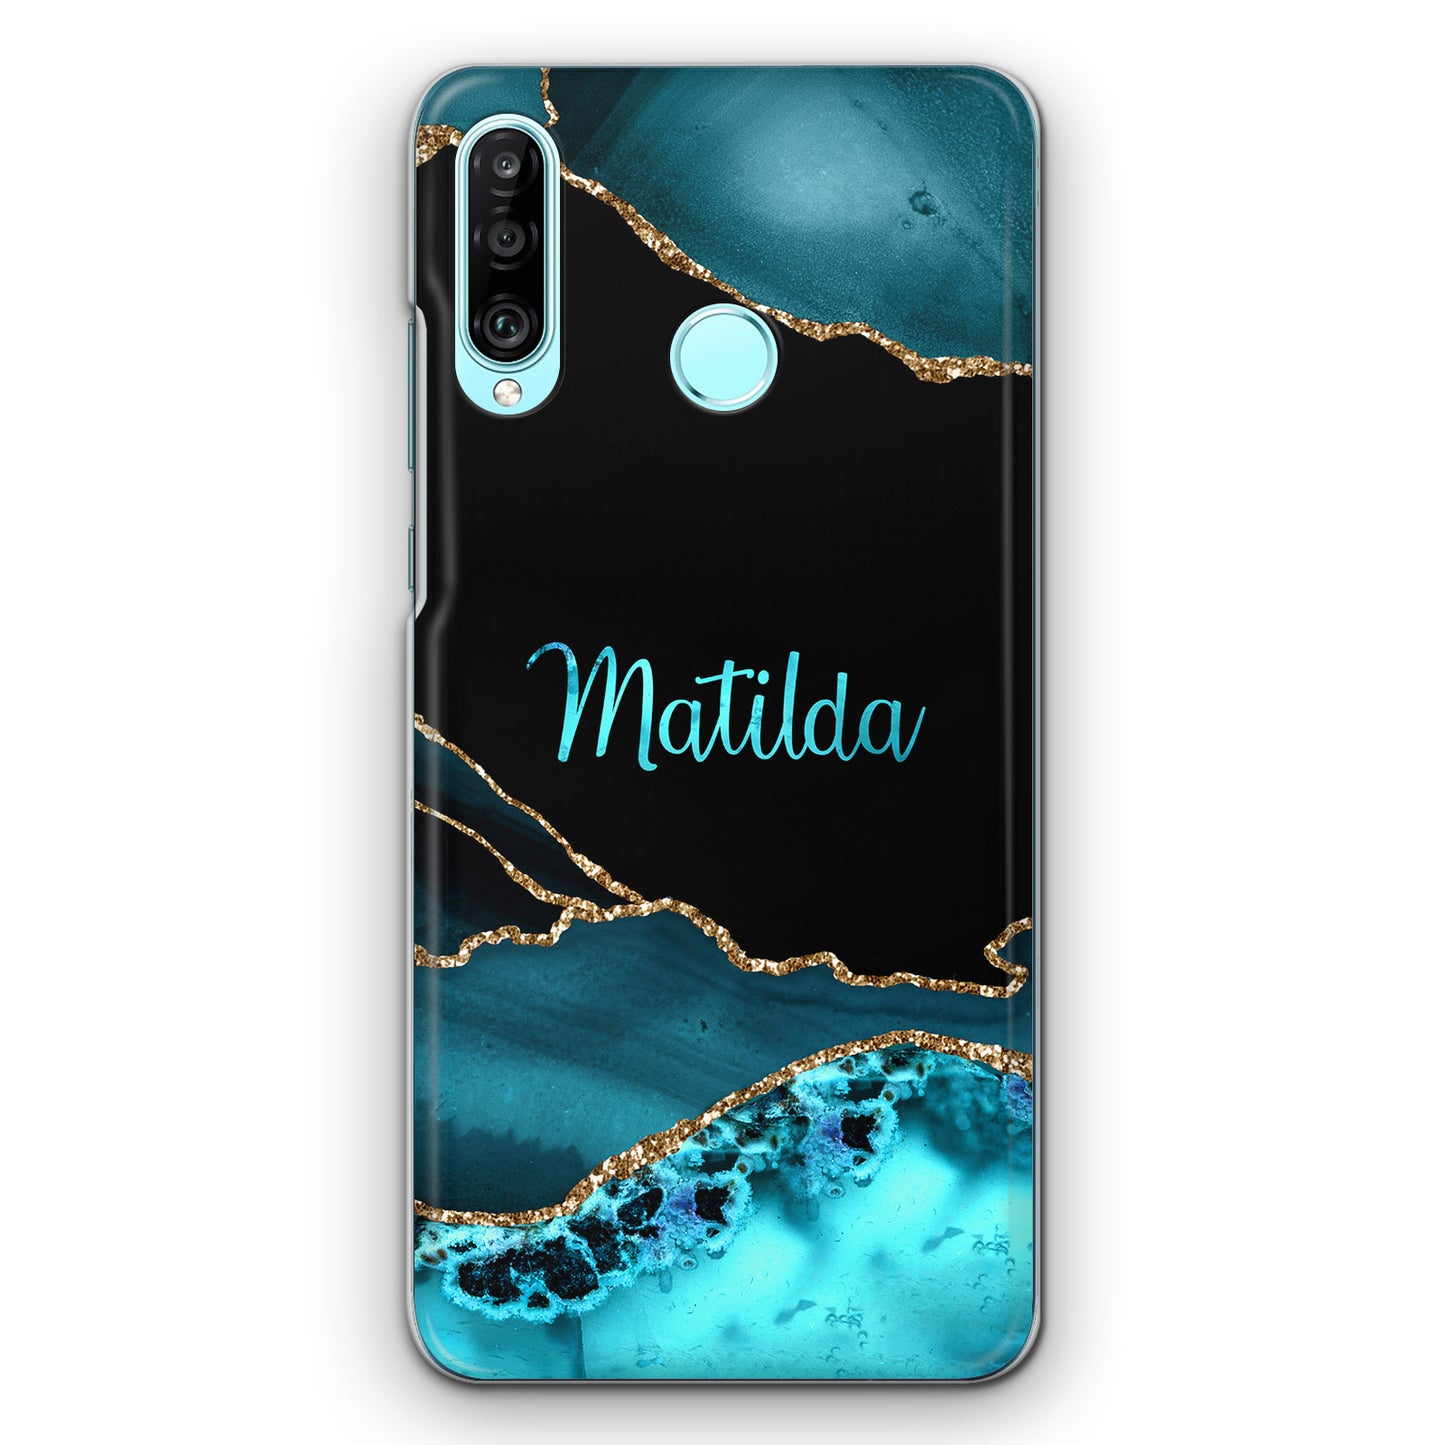 Personalised LG Phone Hard Case with Stylish Name on Turquoise Swirl Marble